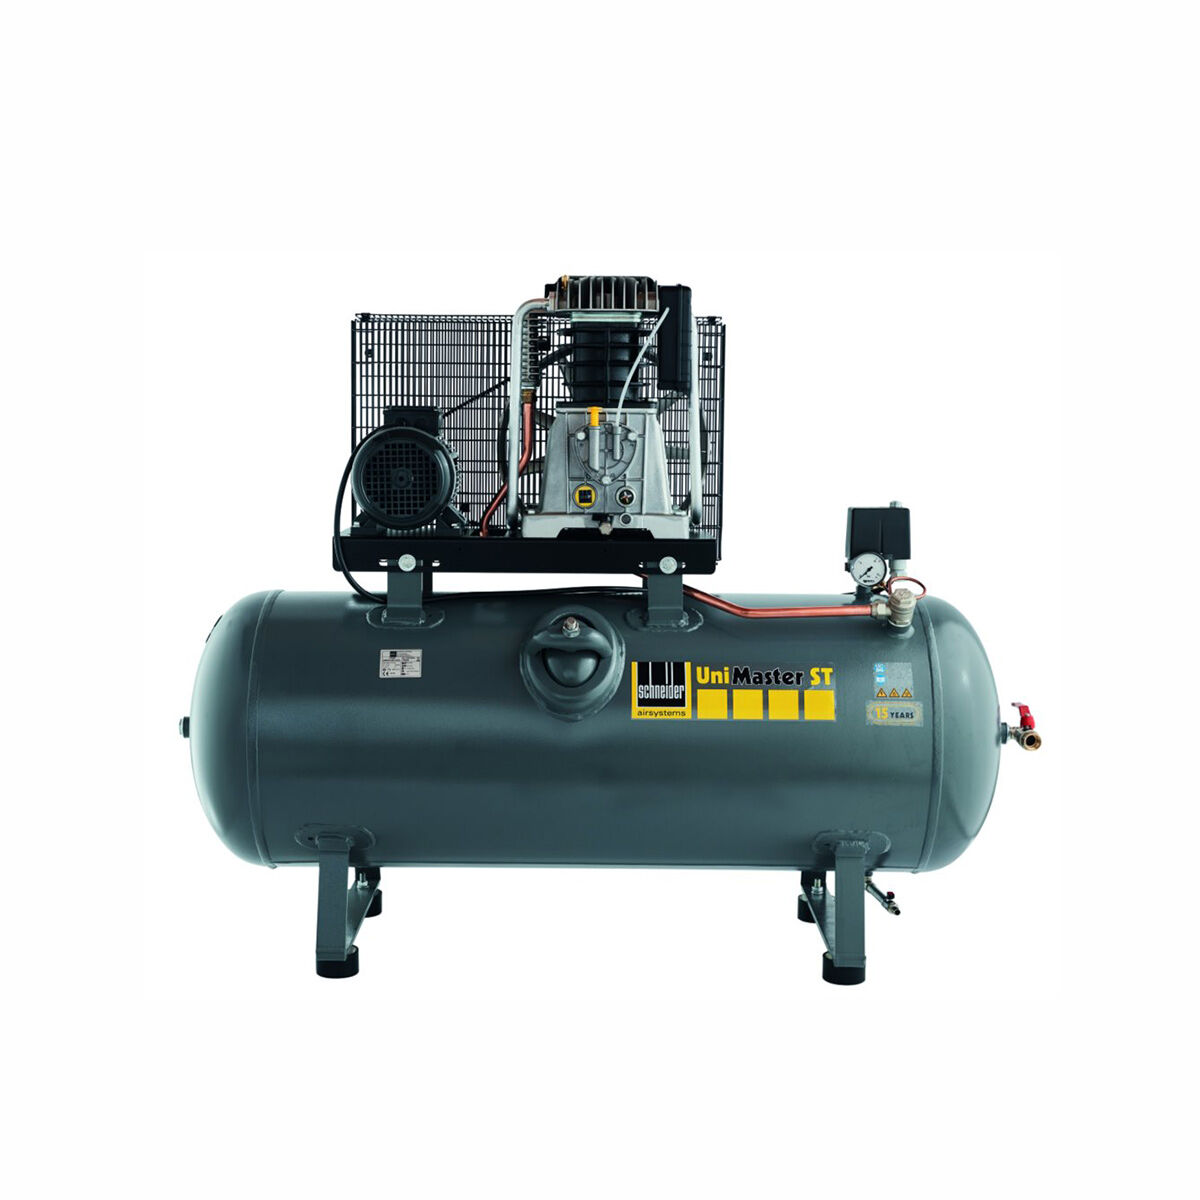 Schneider-Kompressor UNM STL 1000-10-500 1121580512